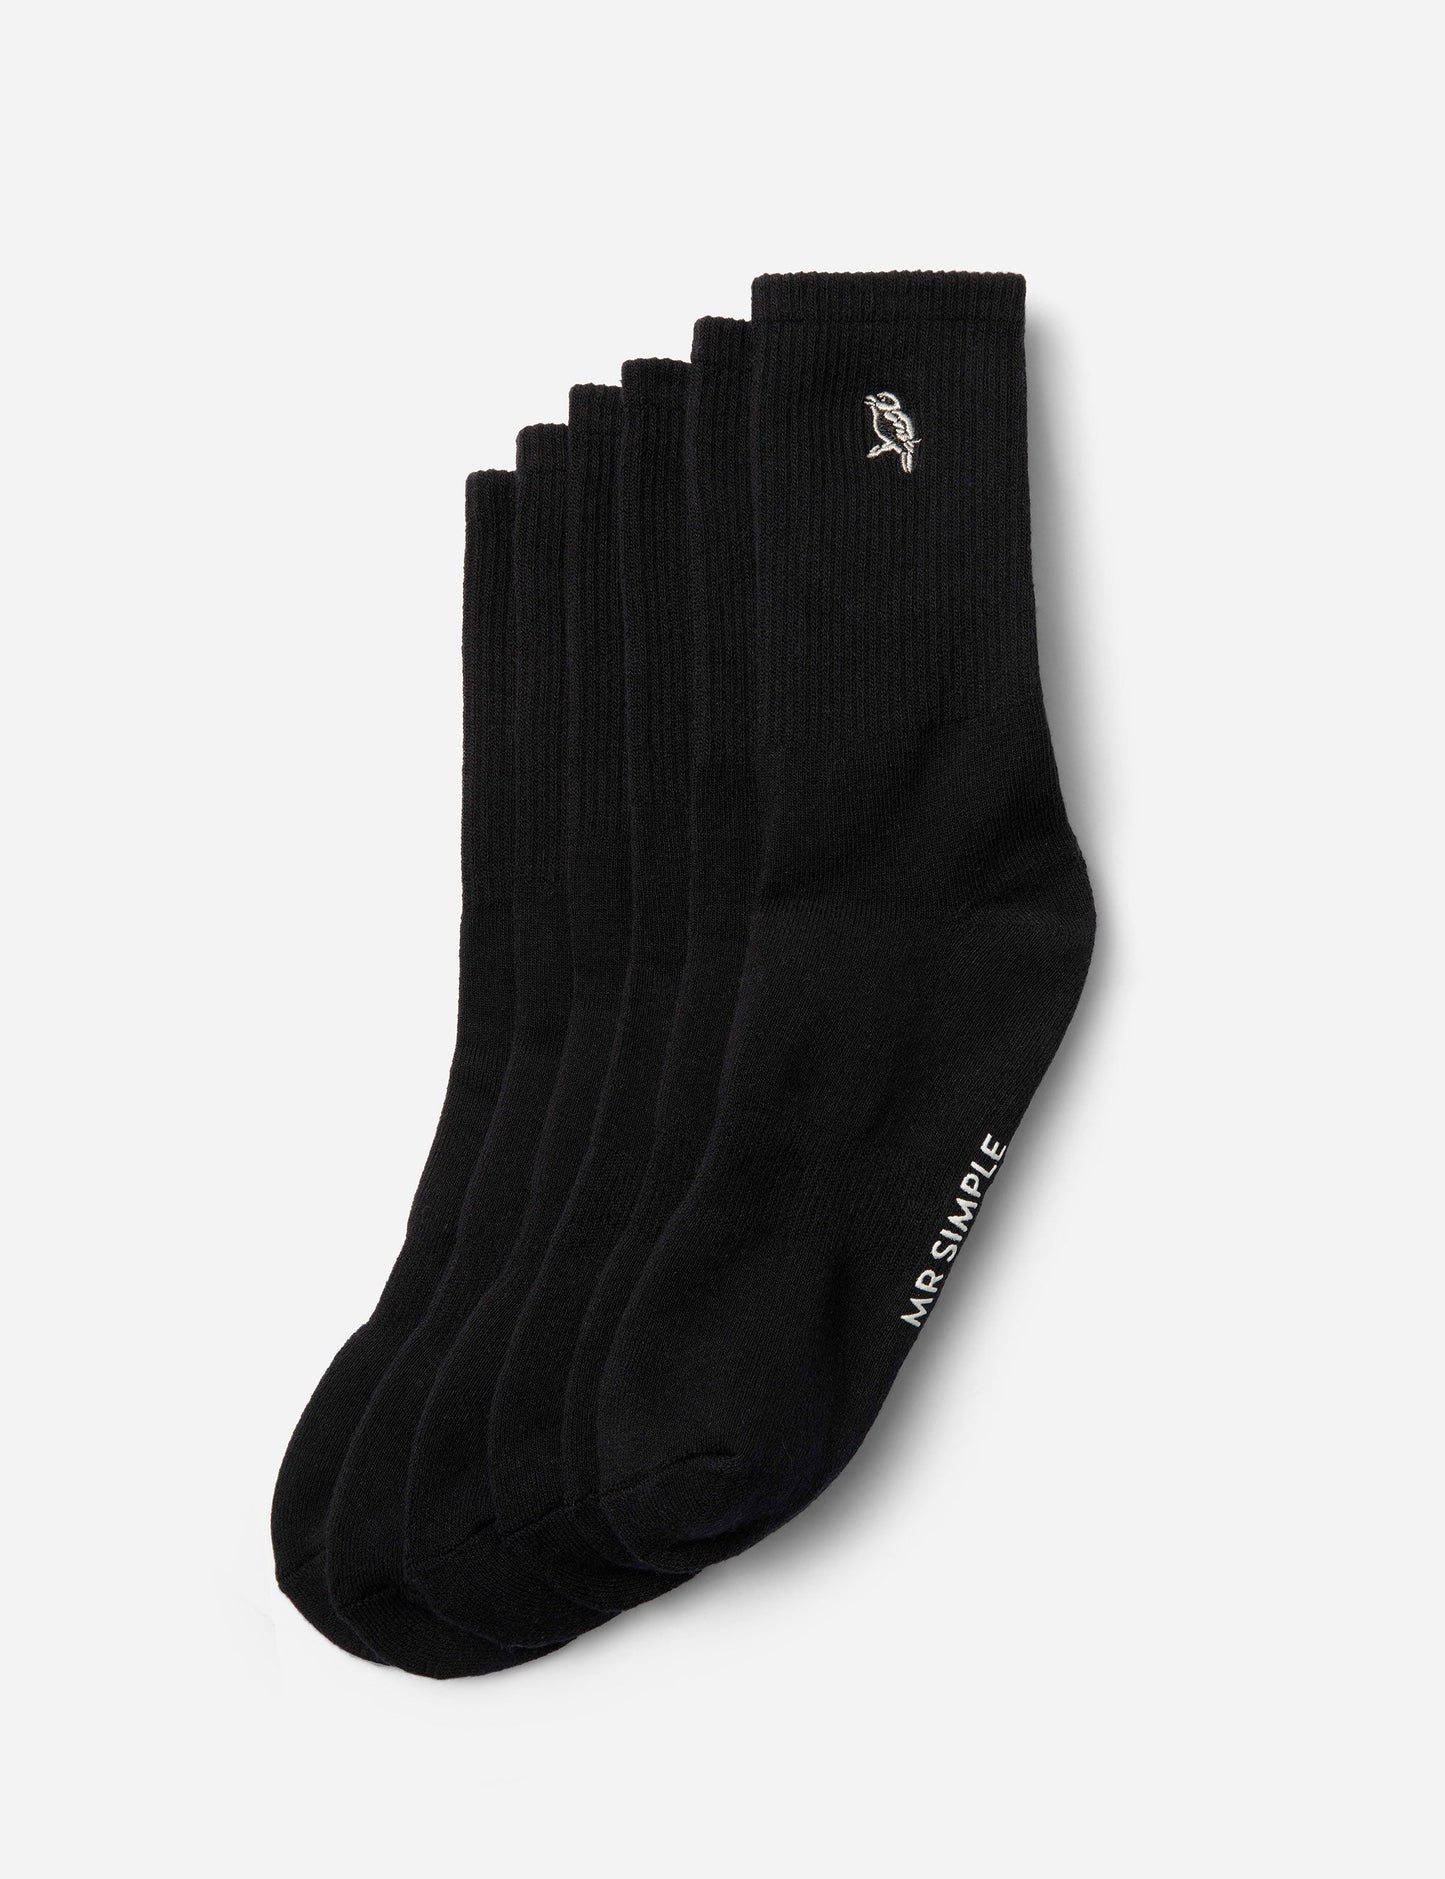 Mister Socks 3 Pack - Black